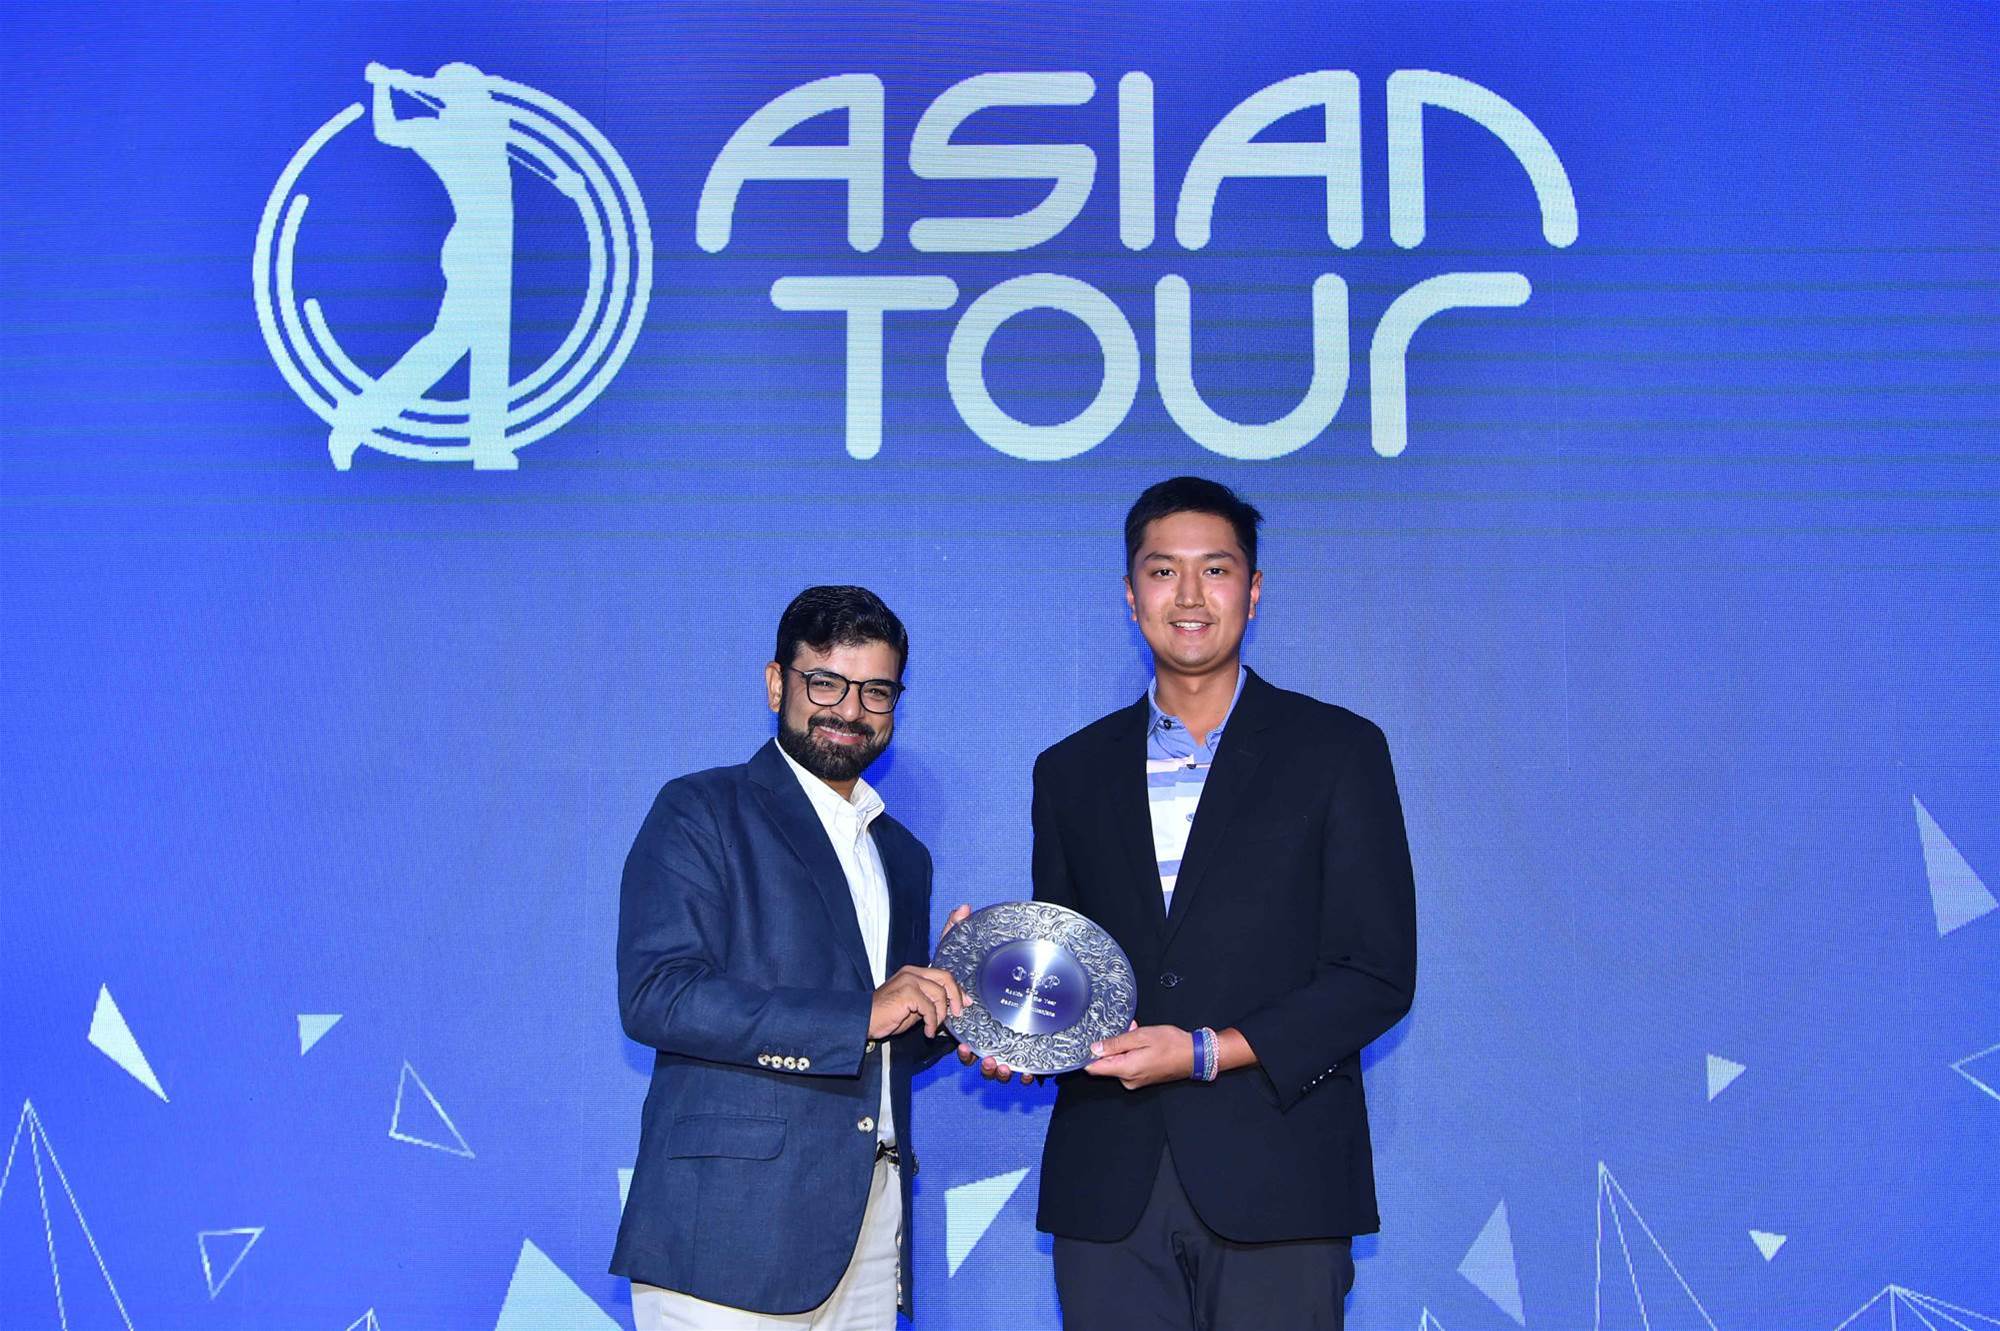 asian tour news